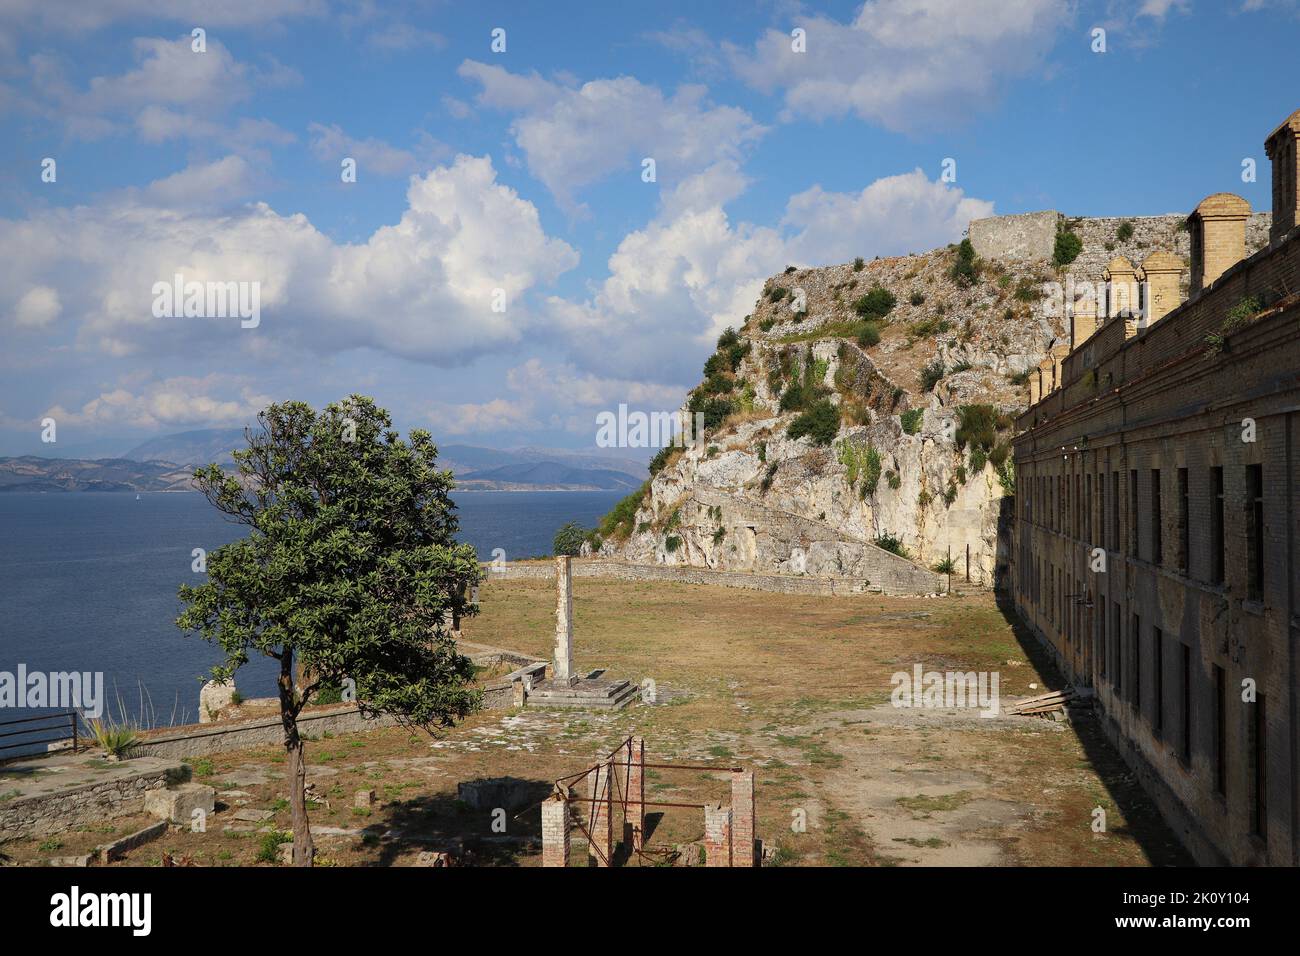 The old Venetian fortress of Corfu town, Corfu, Greece Stock Photo